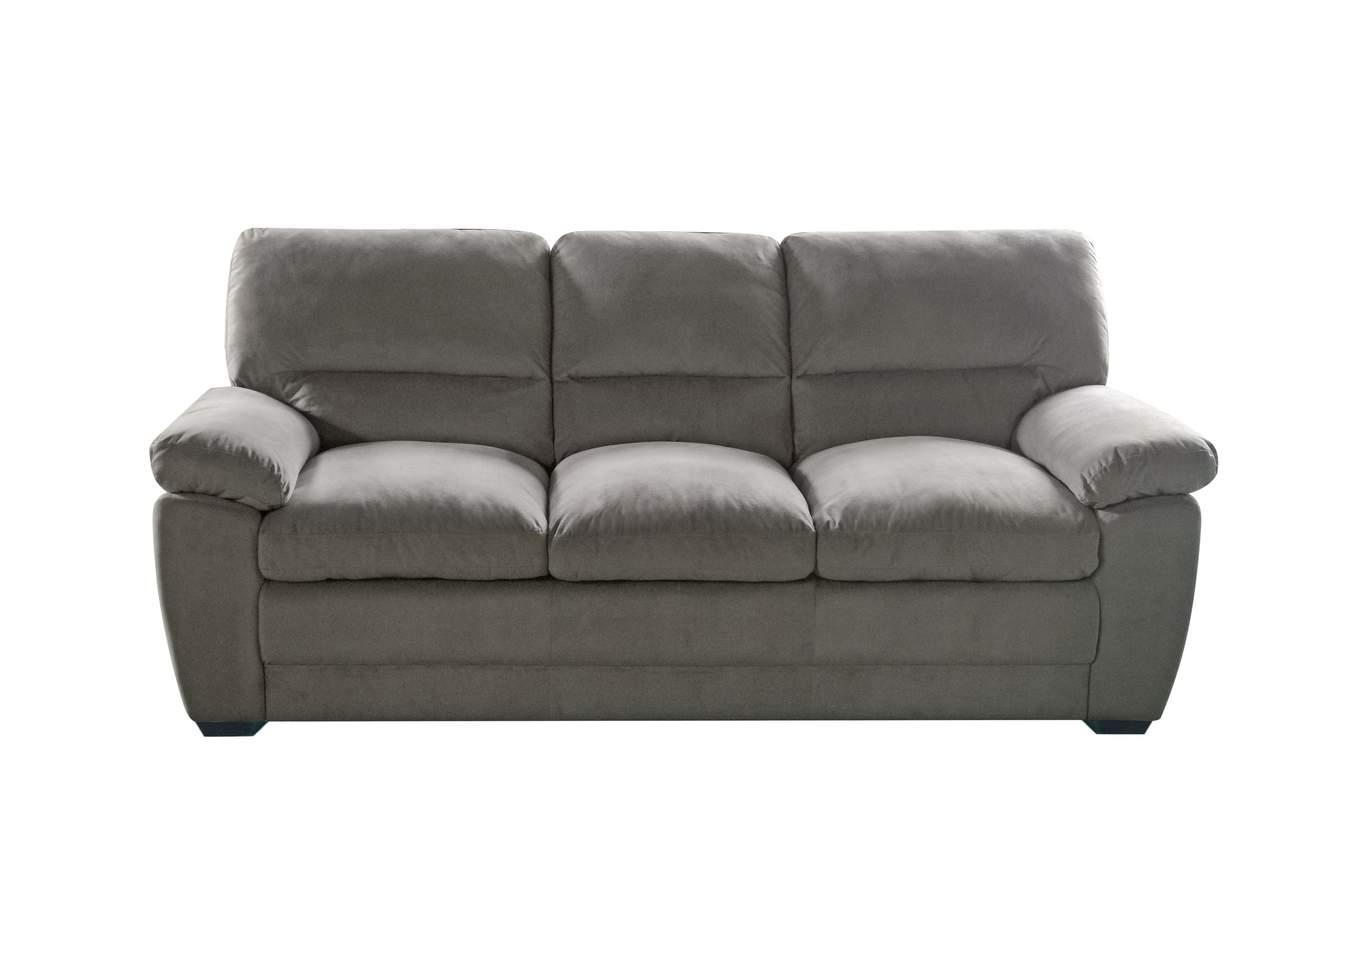 Galaxy Home Furniture MAXX Sofa